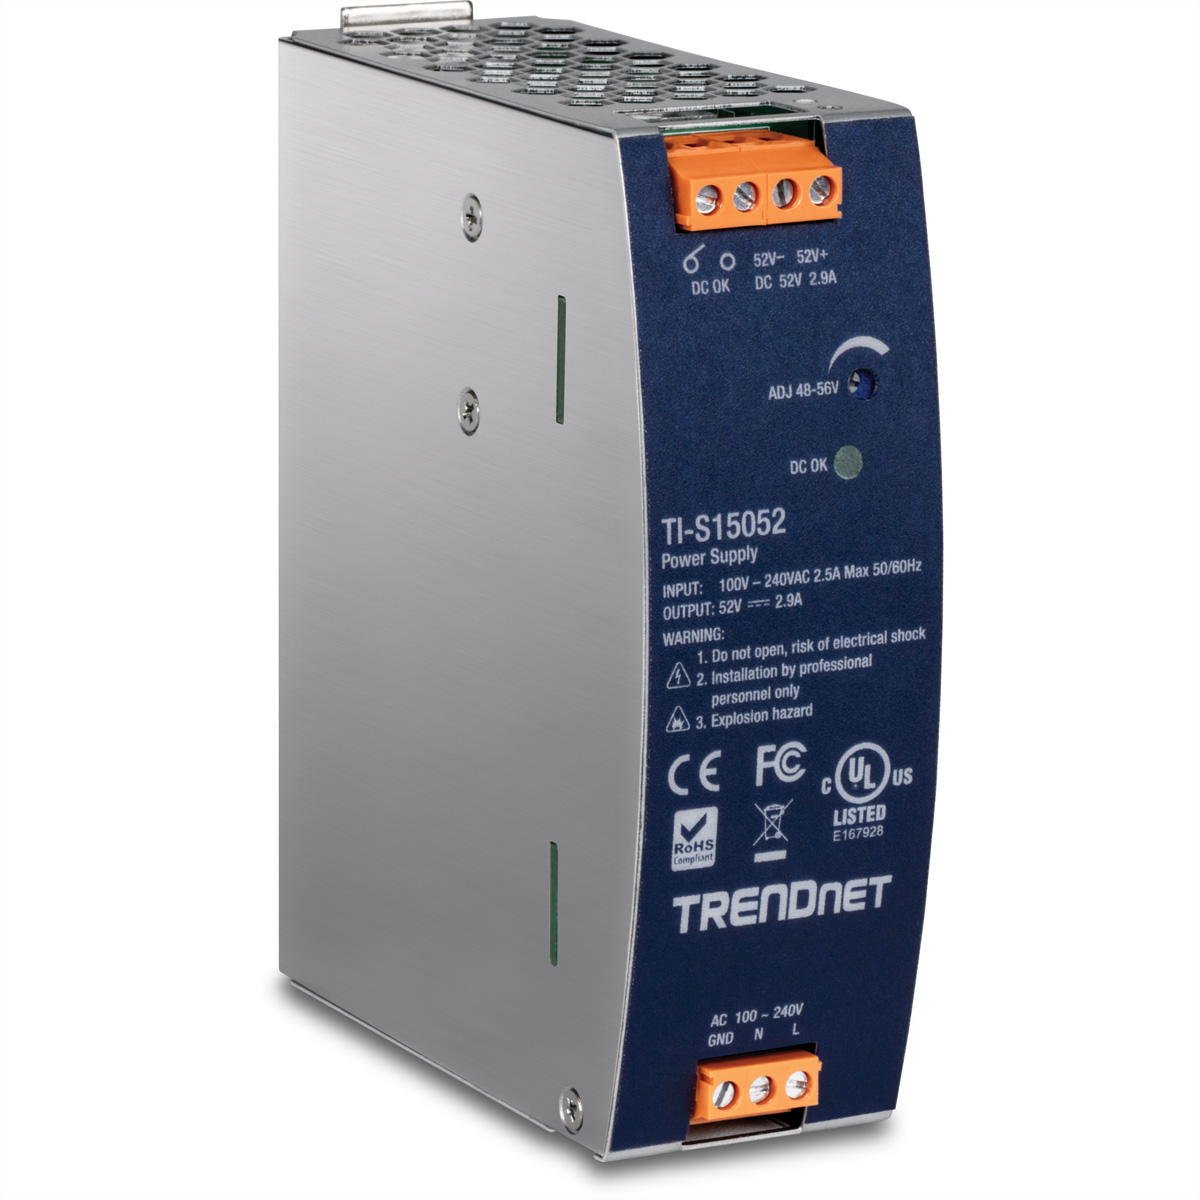 TRENDNET Netzteil Supply TI-S15052 Power DIN-Rail